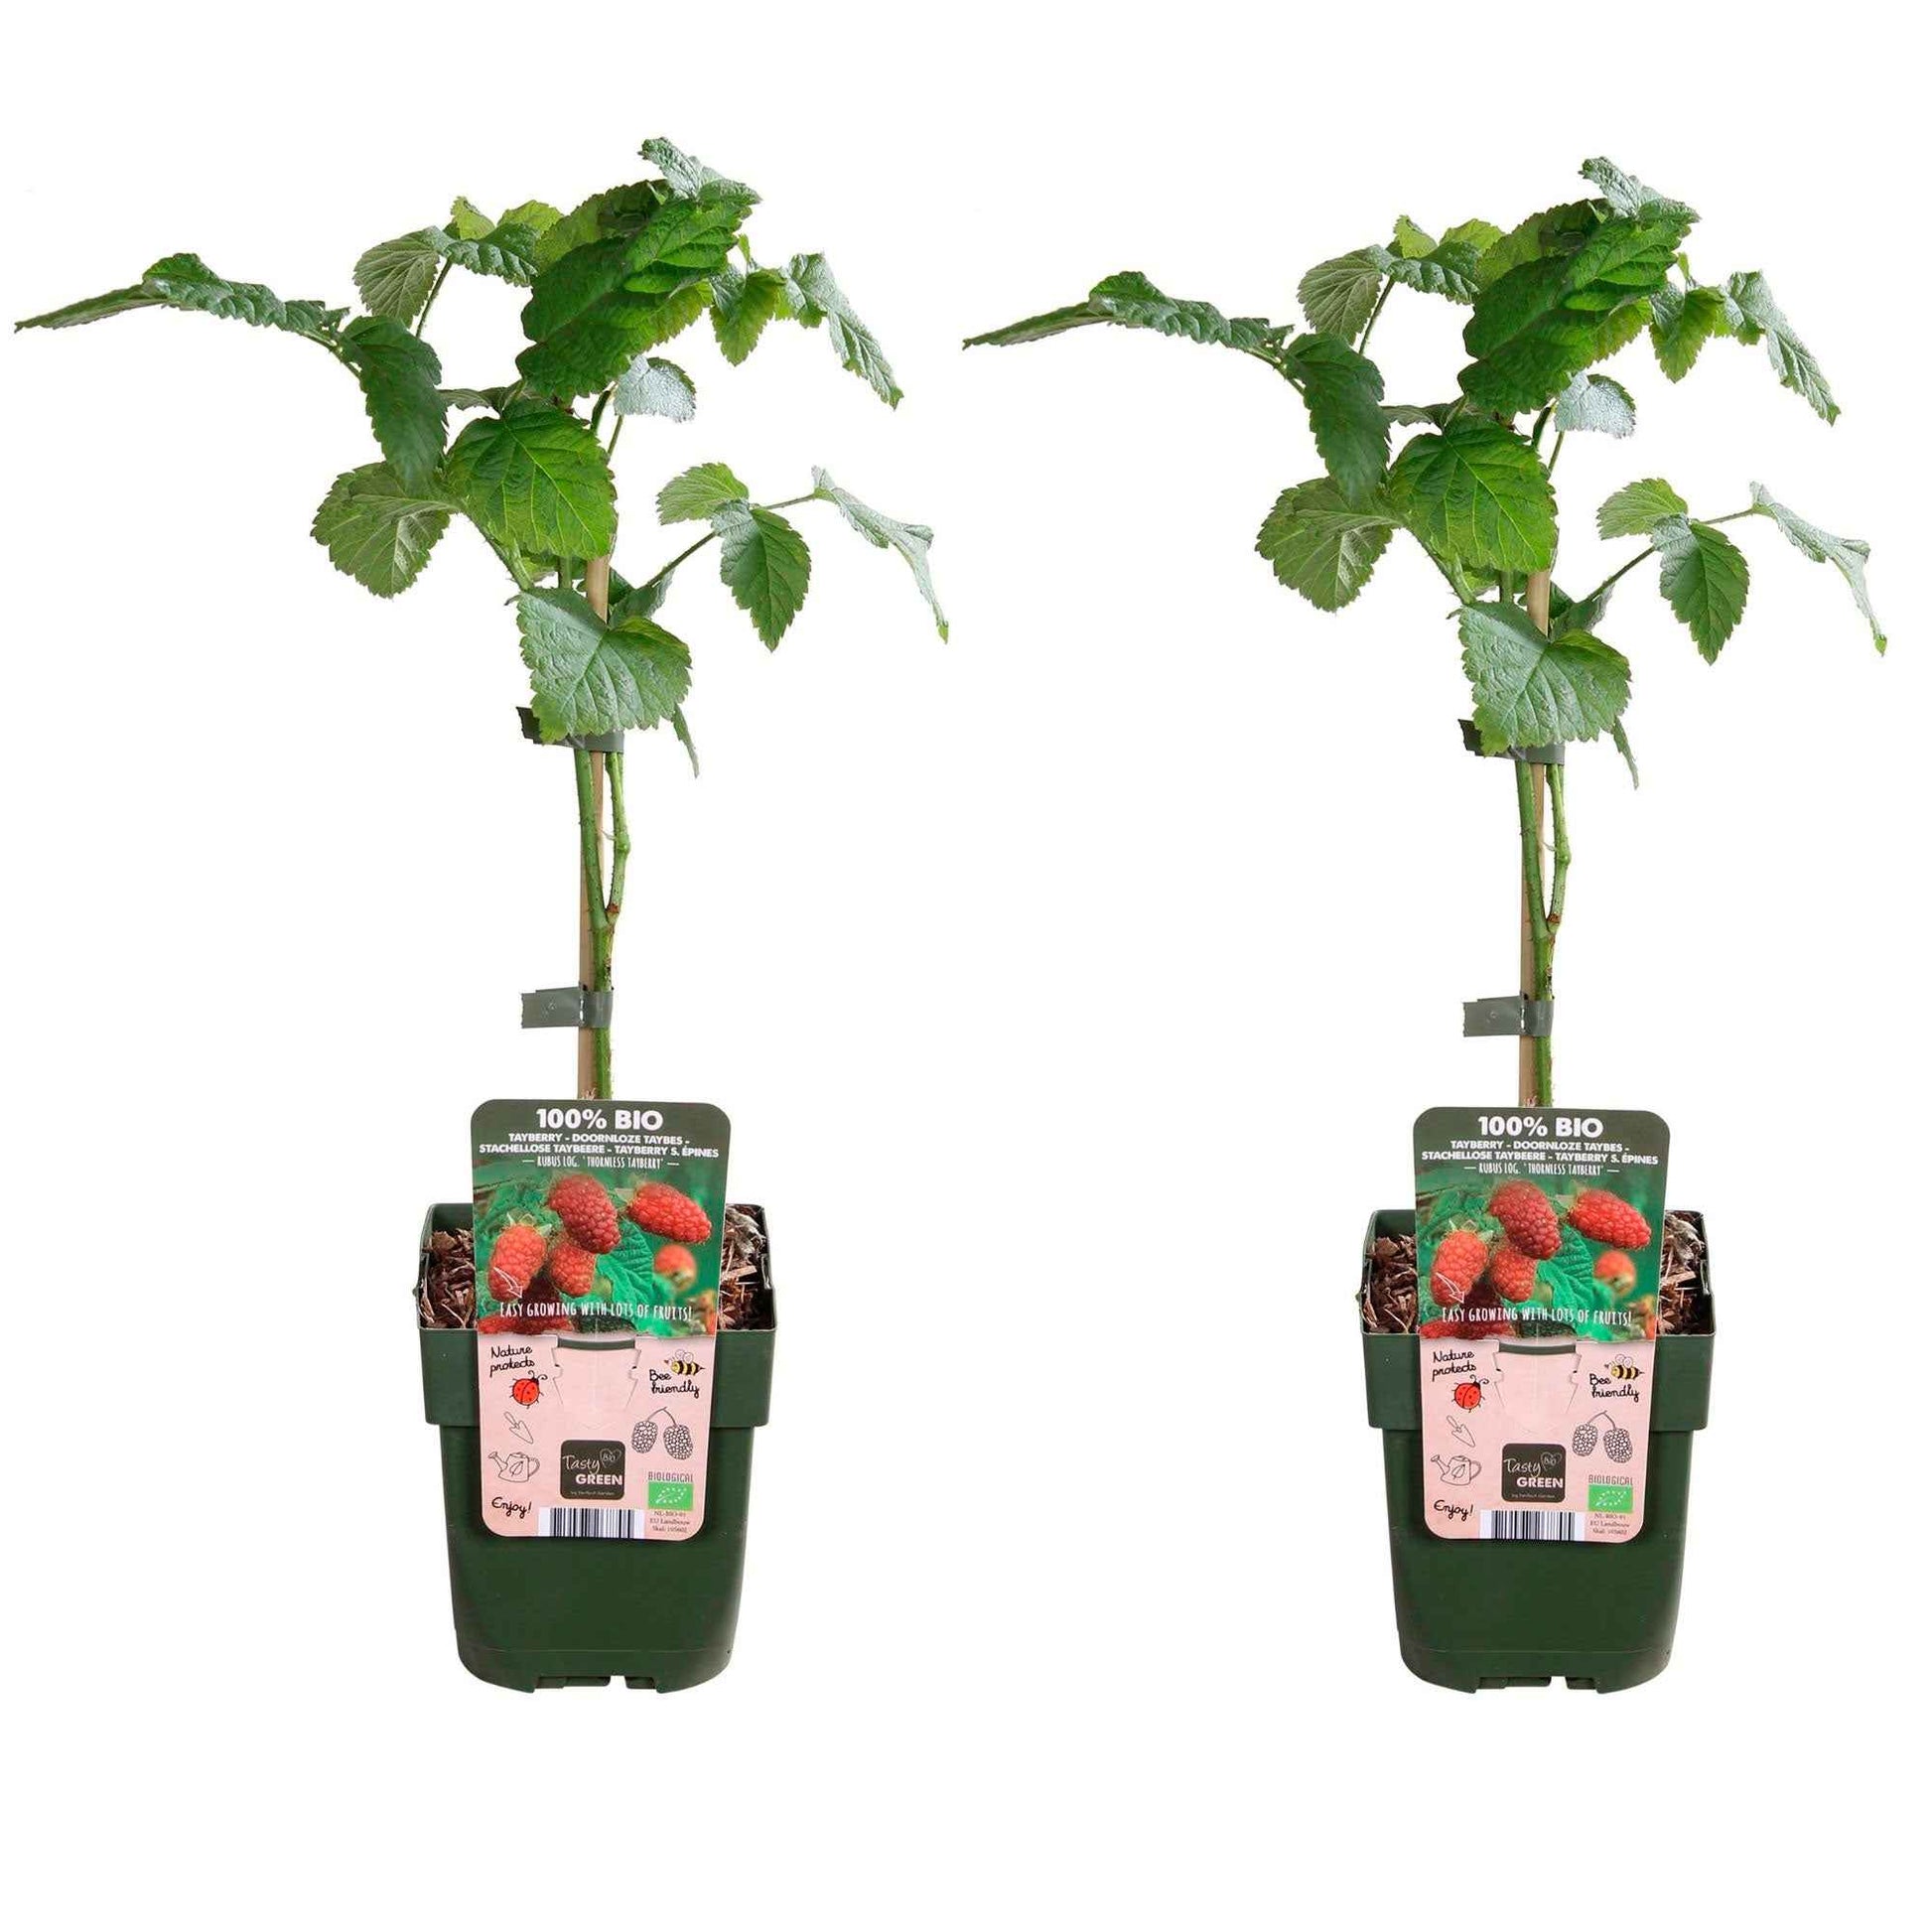 Mûre-framboise Tayberry - hauteur de livraison 30-60 cm, pot de Diamètre 13 cm - Caractéristiques des plantes - undefined